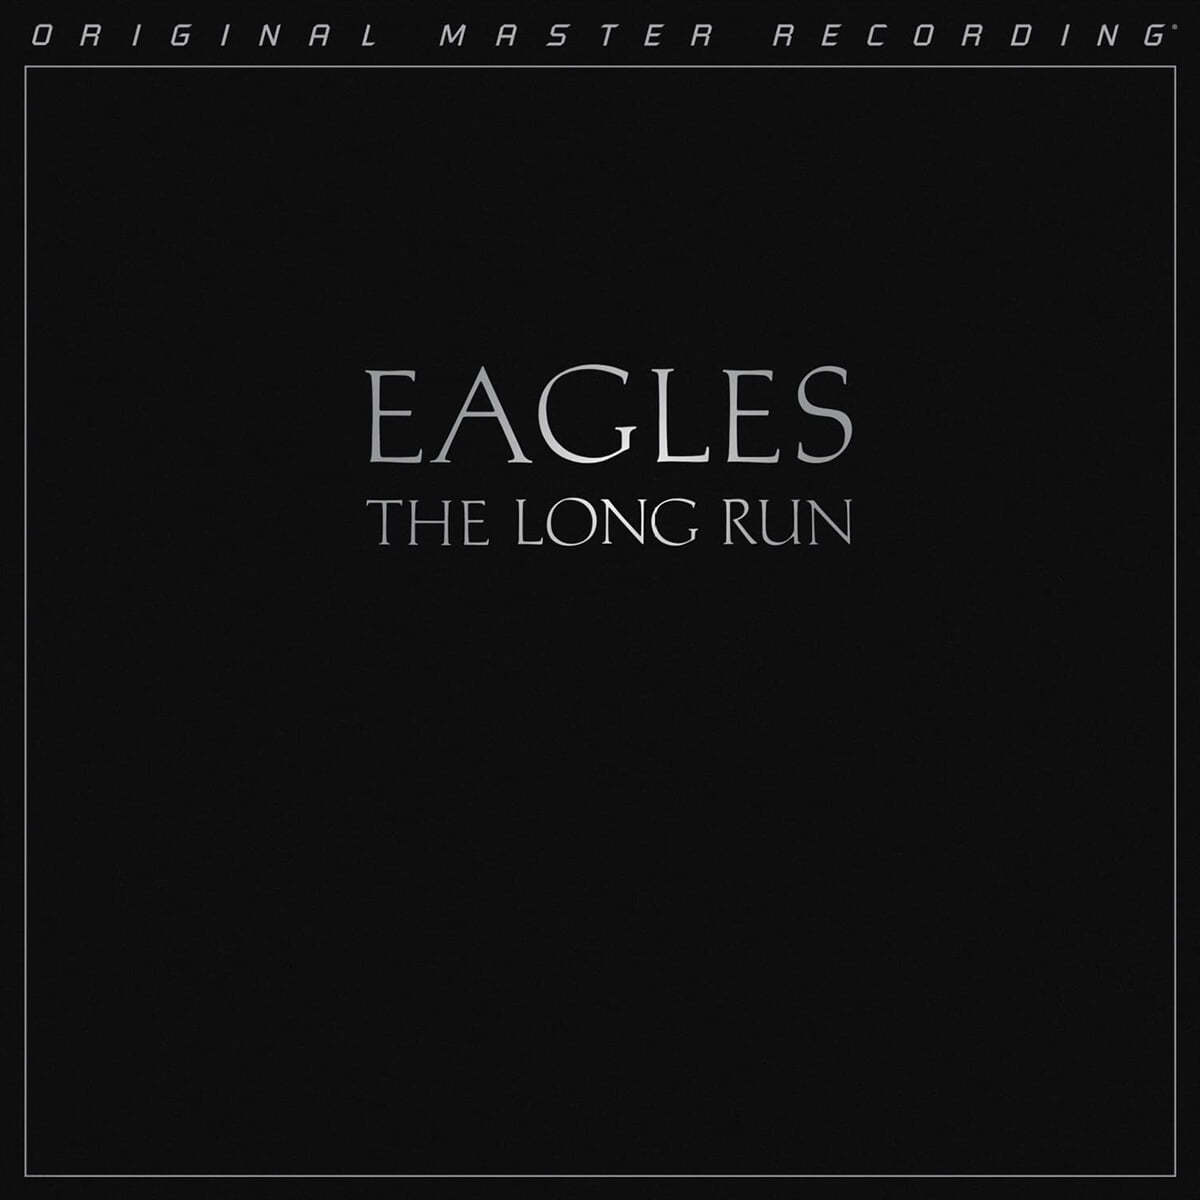 Eagles (이글스) - The Long Run 